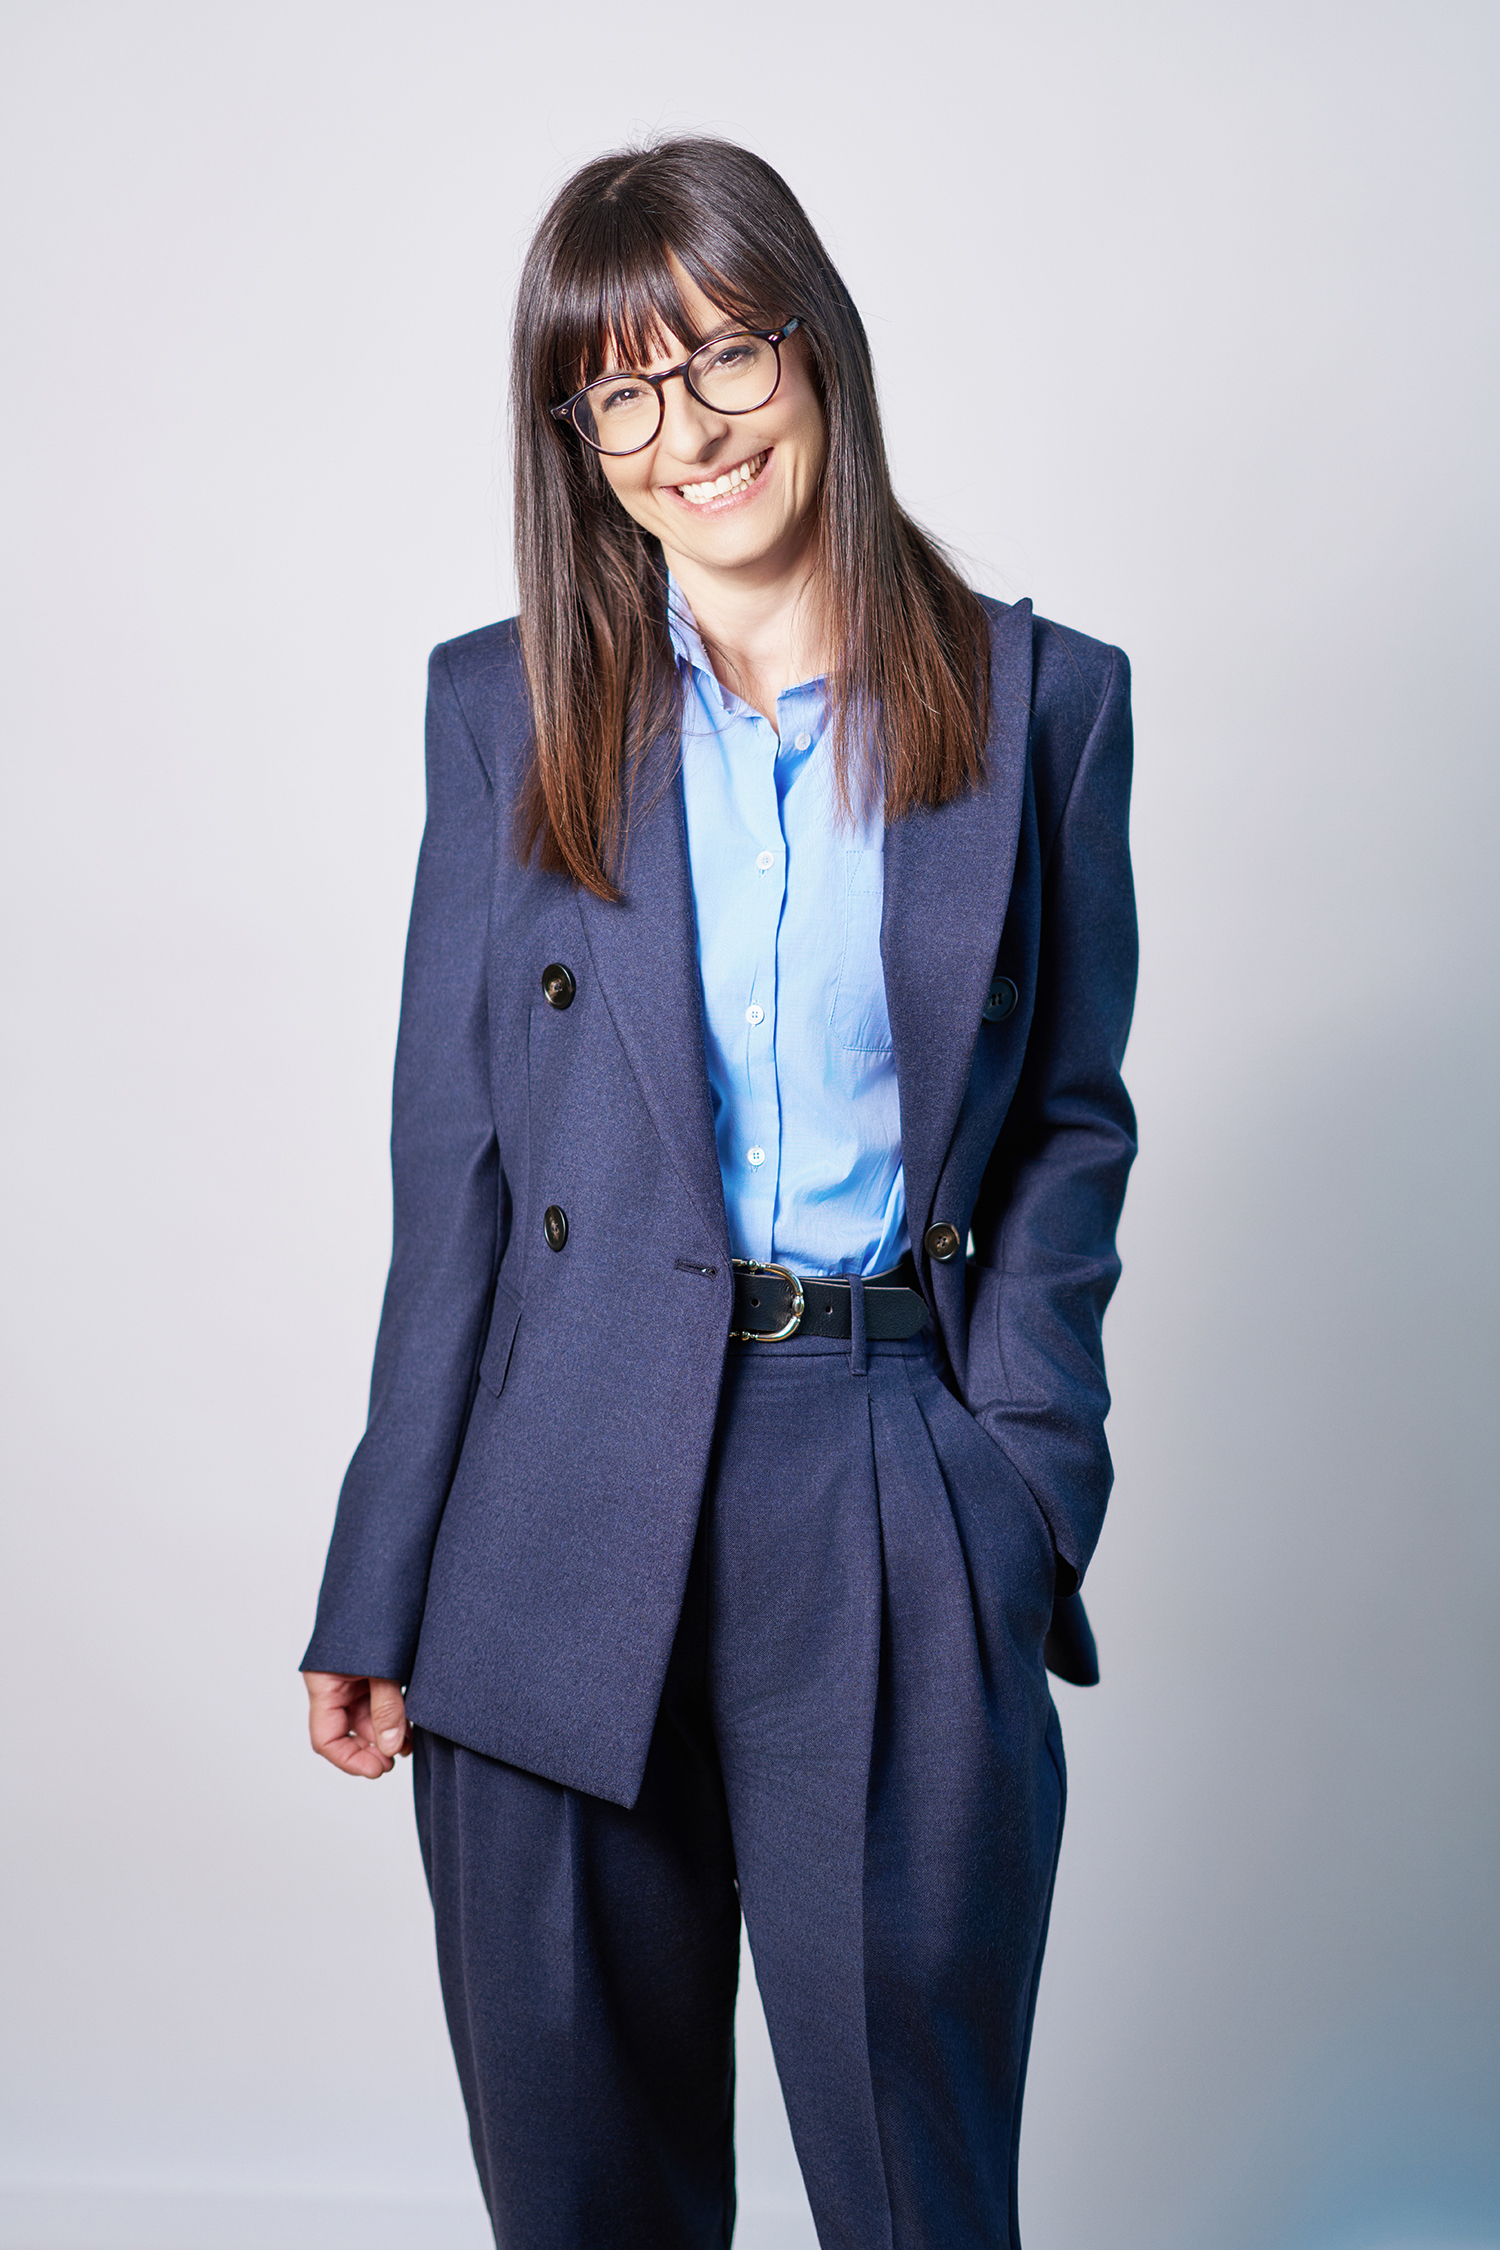 Daniela Gerardi è la nuova Finance Director di Birra Peroni